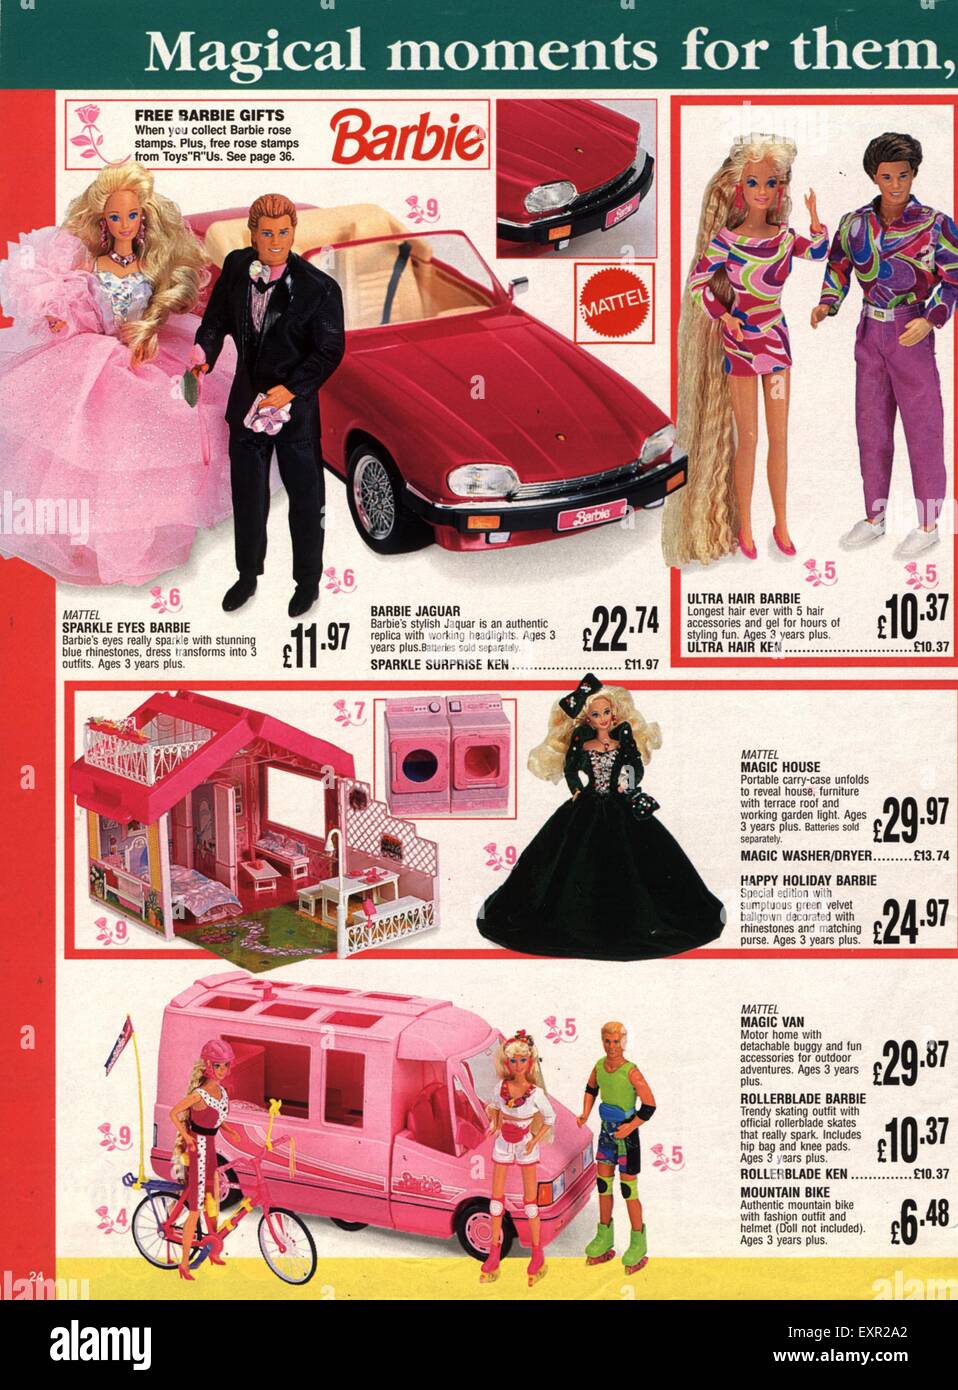 1990er Jahre UK Mattel Barbie und Ken Puppen Katalog / Broschüre Platte  Stockfotografie - Alamy